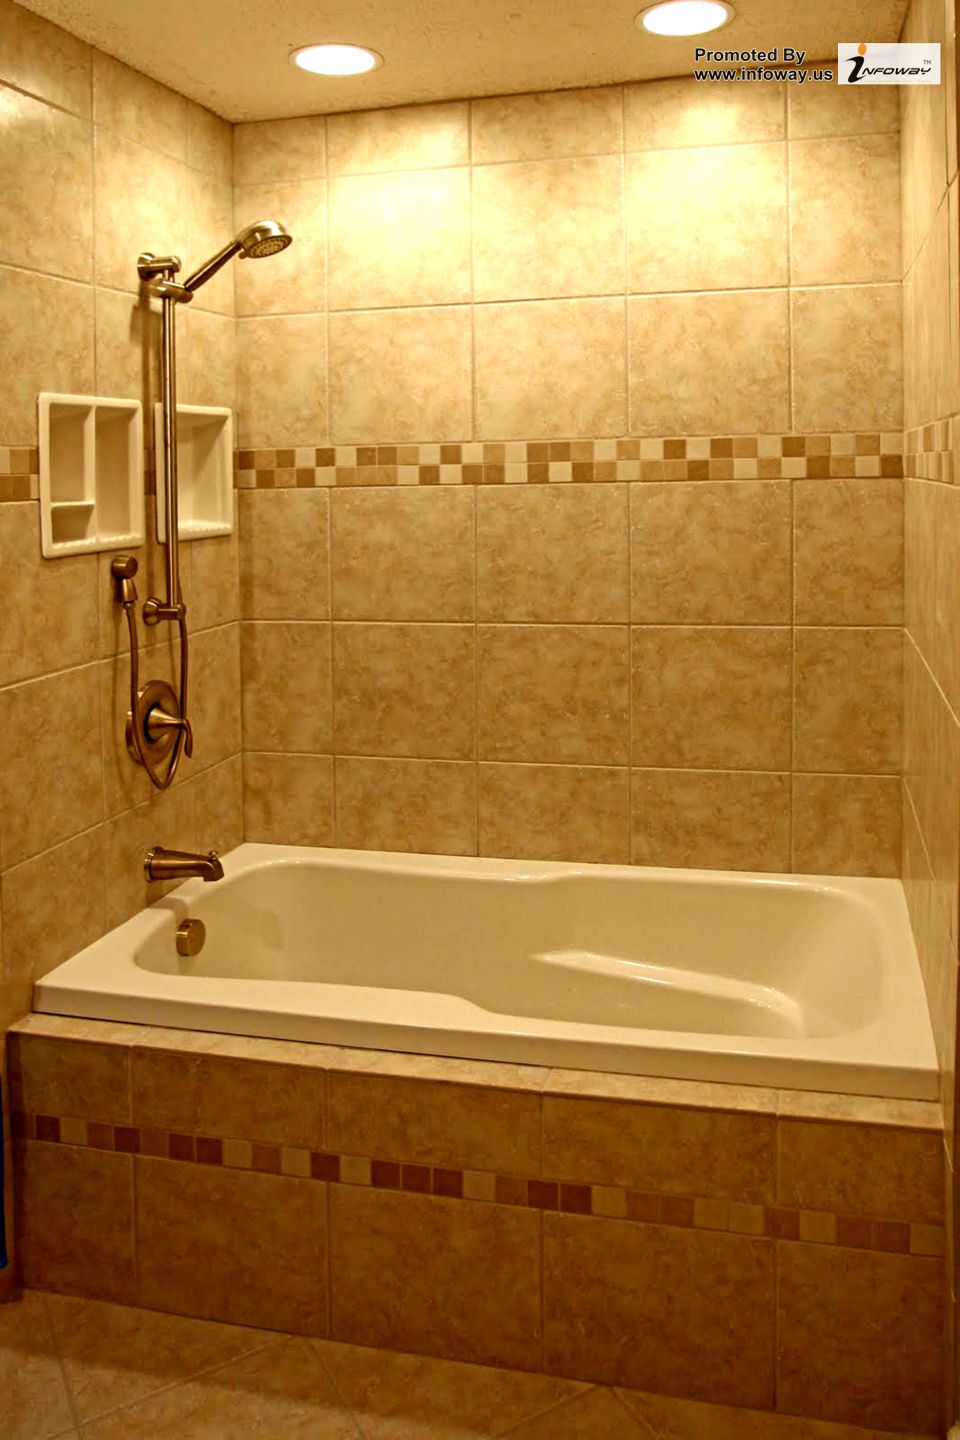 1920x1440-simple-bathroom-tile-designs-combination-creamy